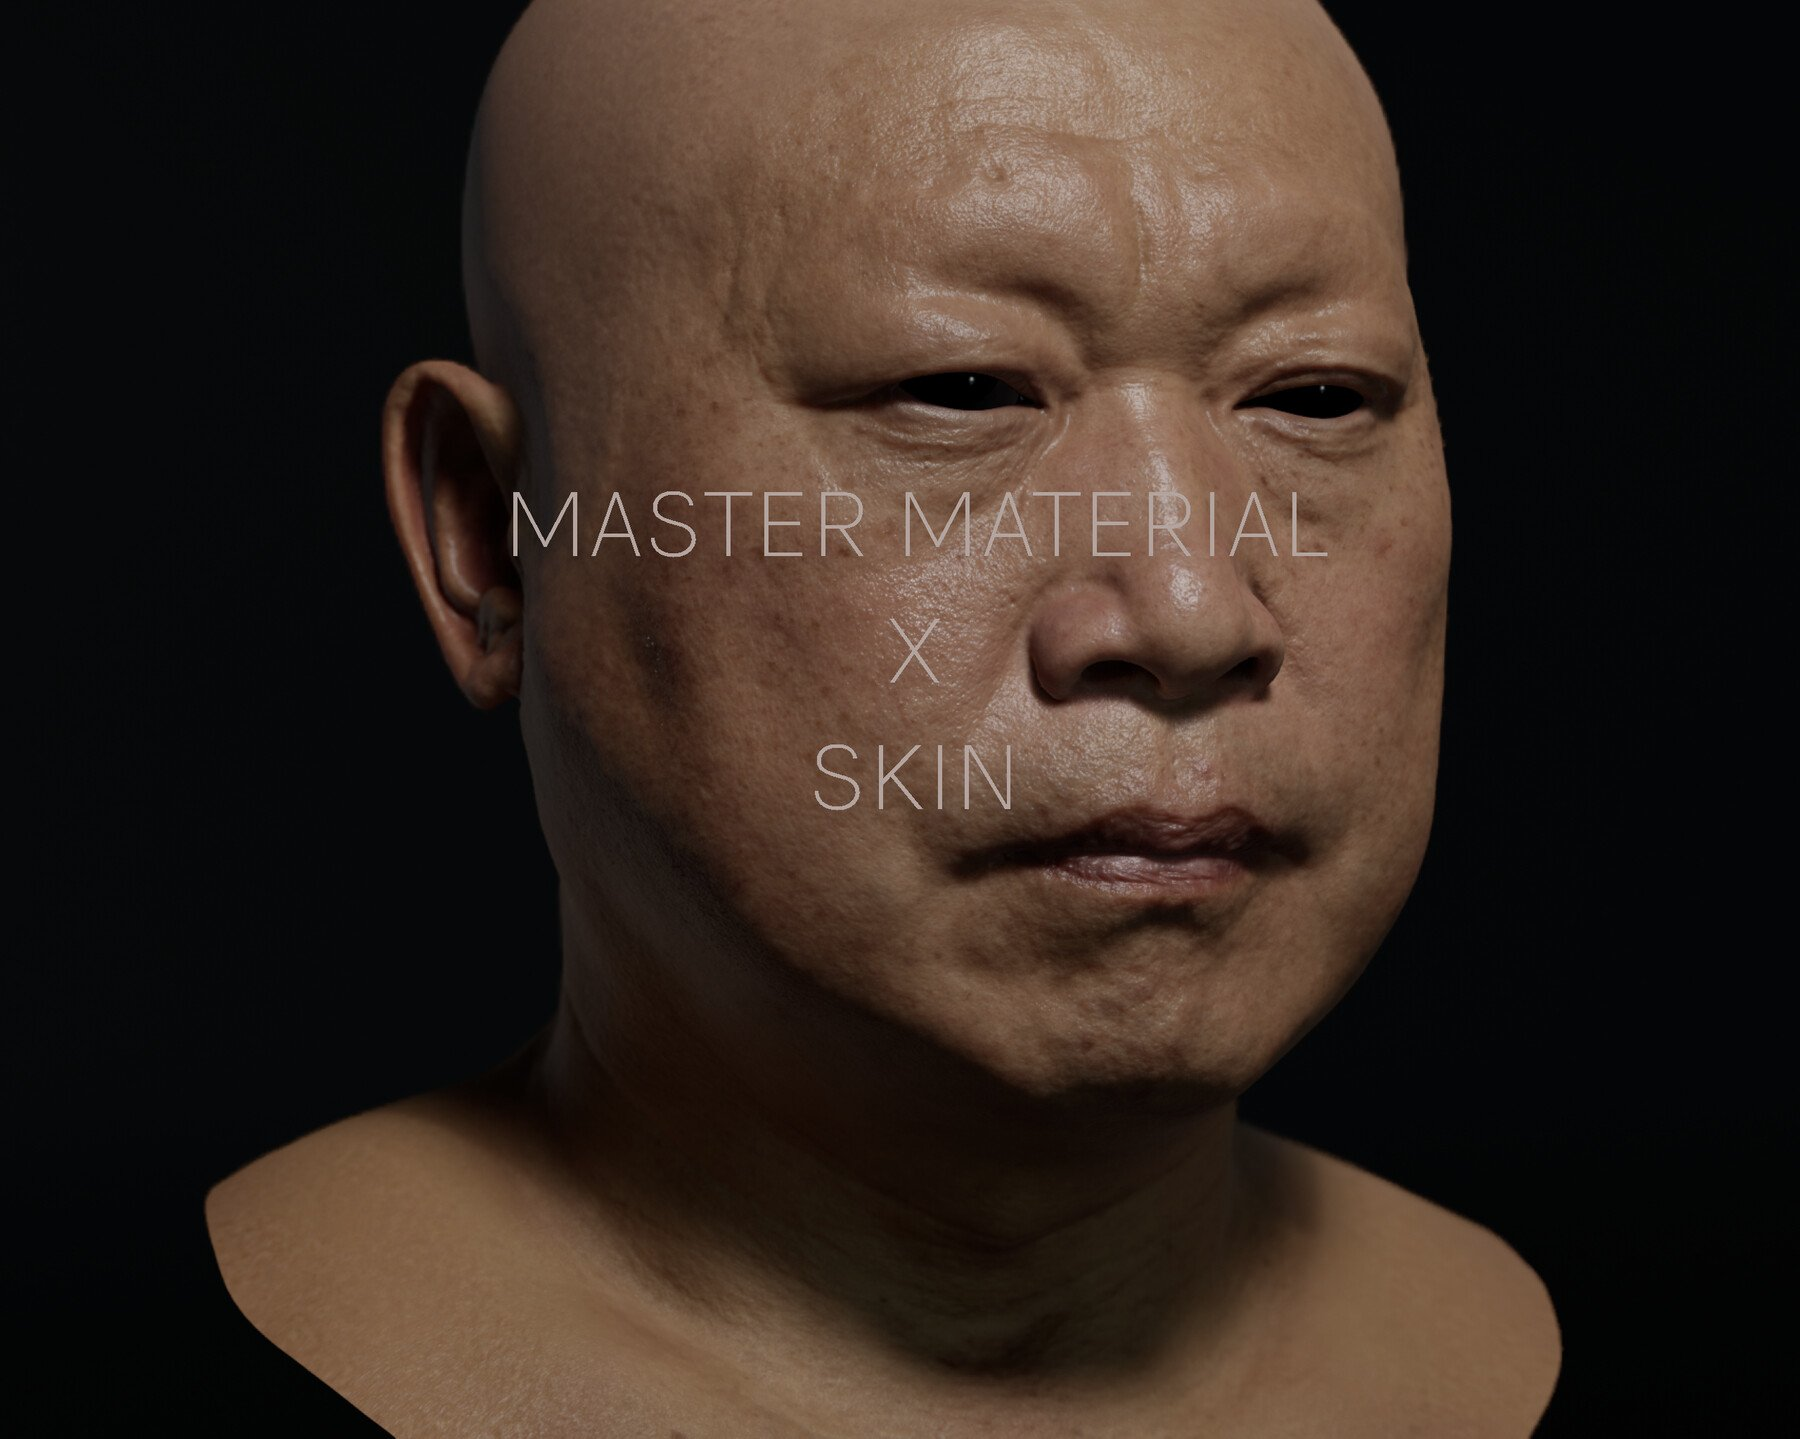 ArtStation - Unreal Master Material for Skin | Tutorials